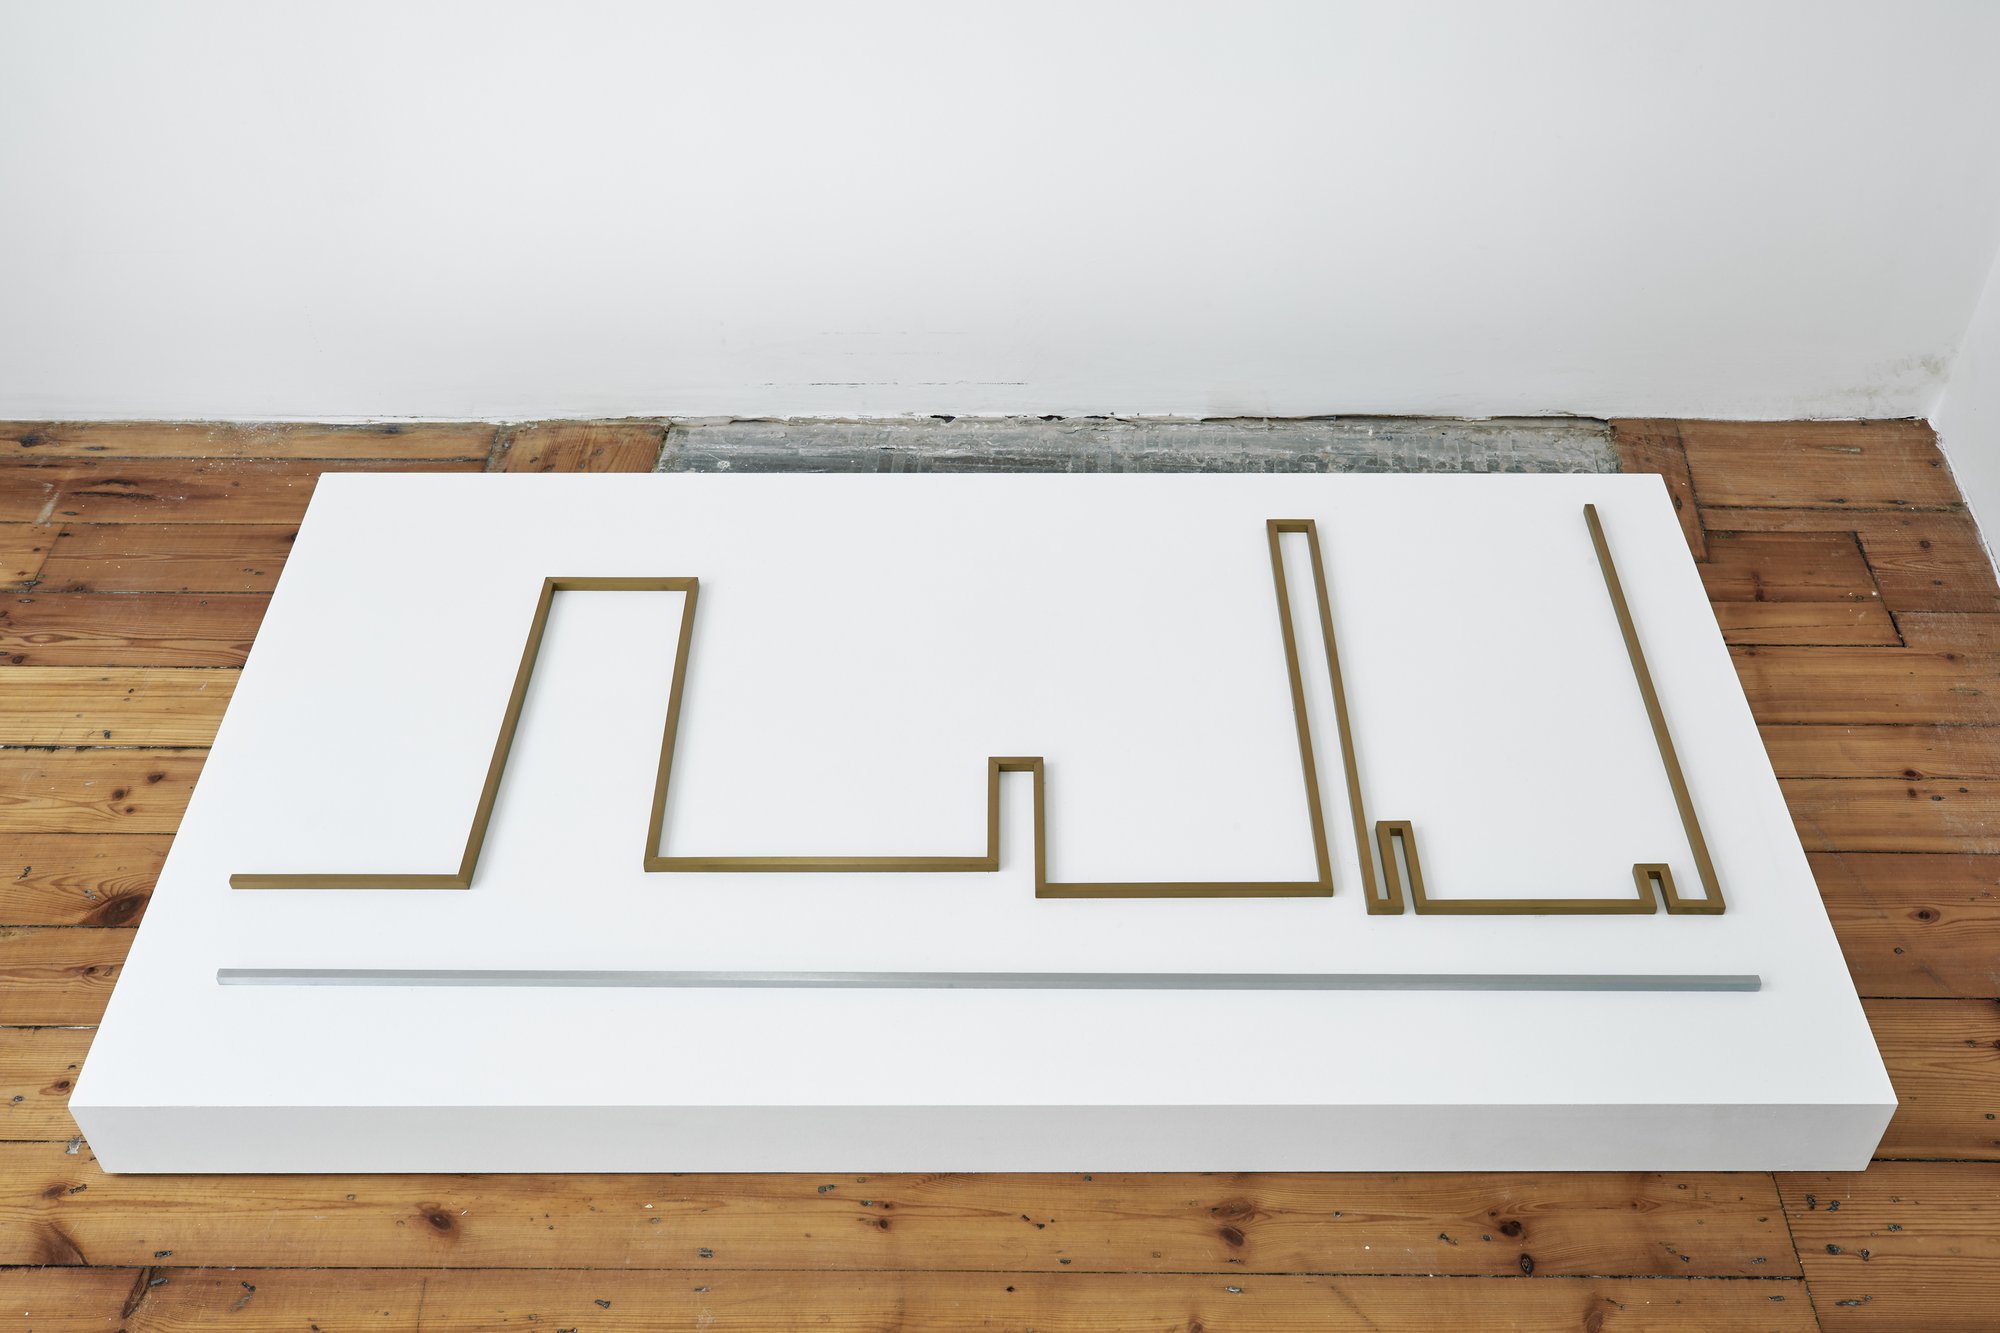 Iman Issa, Seduction (study for 2014), bronze and aluminum sculpture, text panel under glass, white plinth, sculpture: 62.5 x 124 cm, plinth: 9 x 140.5 x 80 cm, 2014